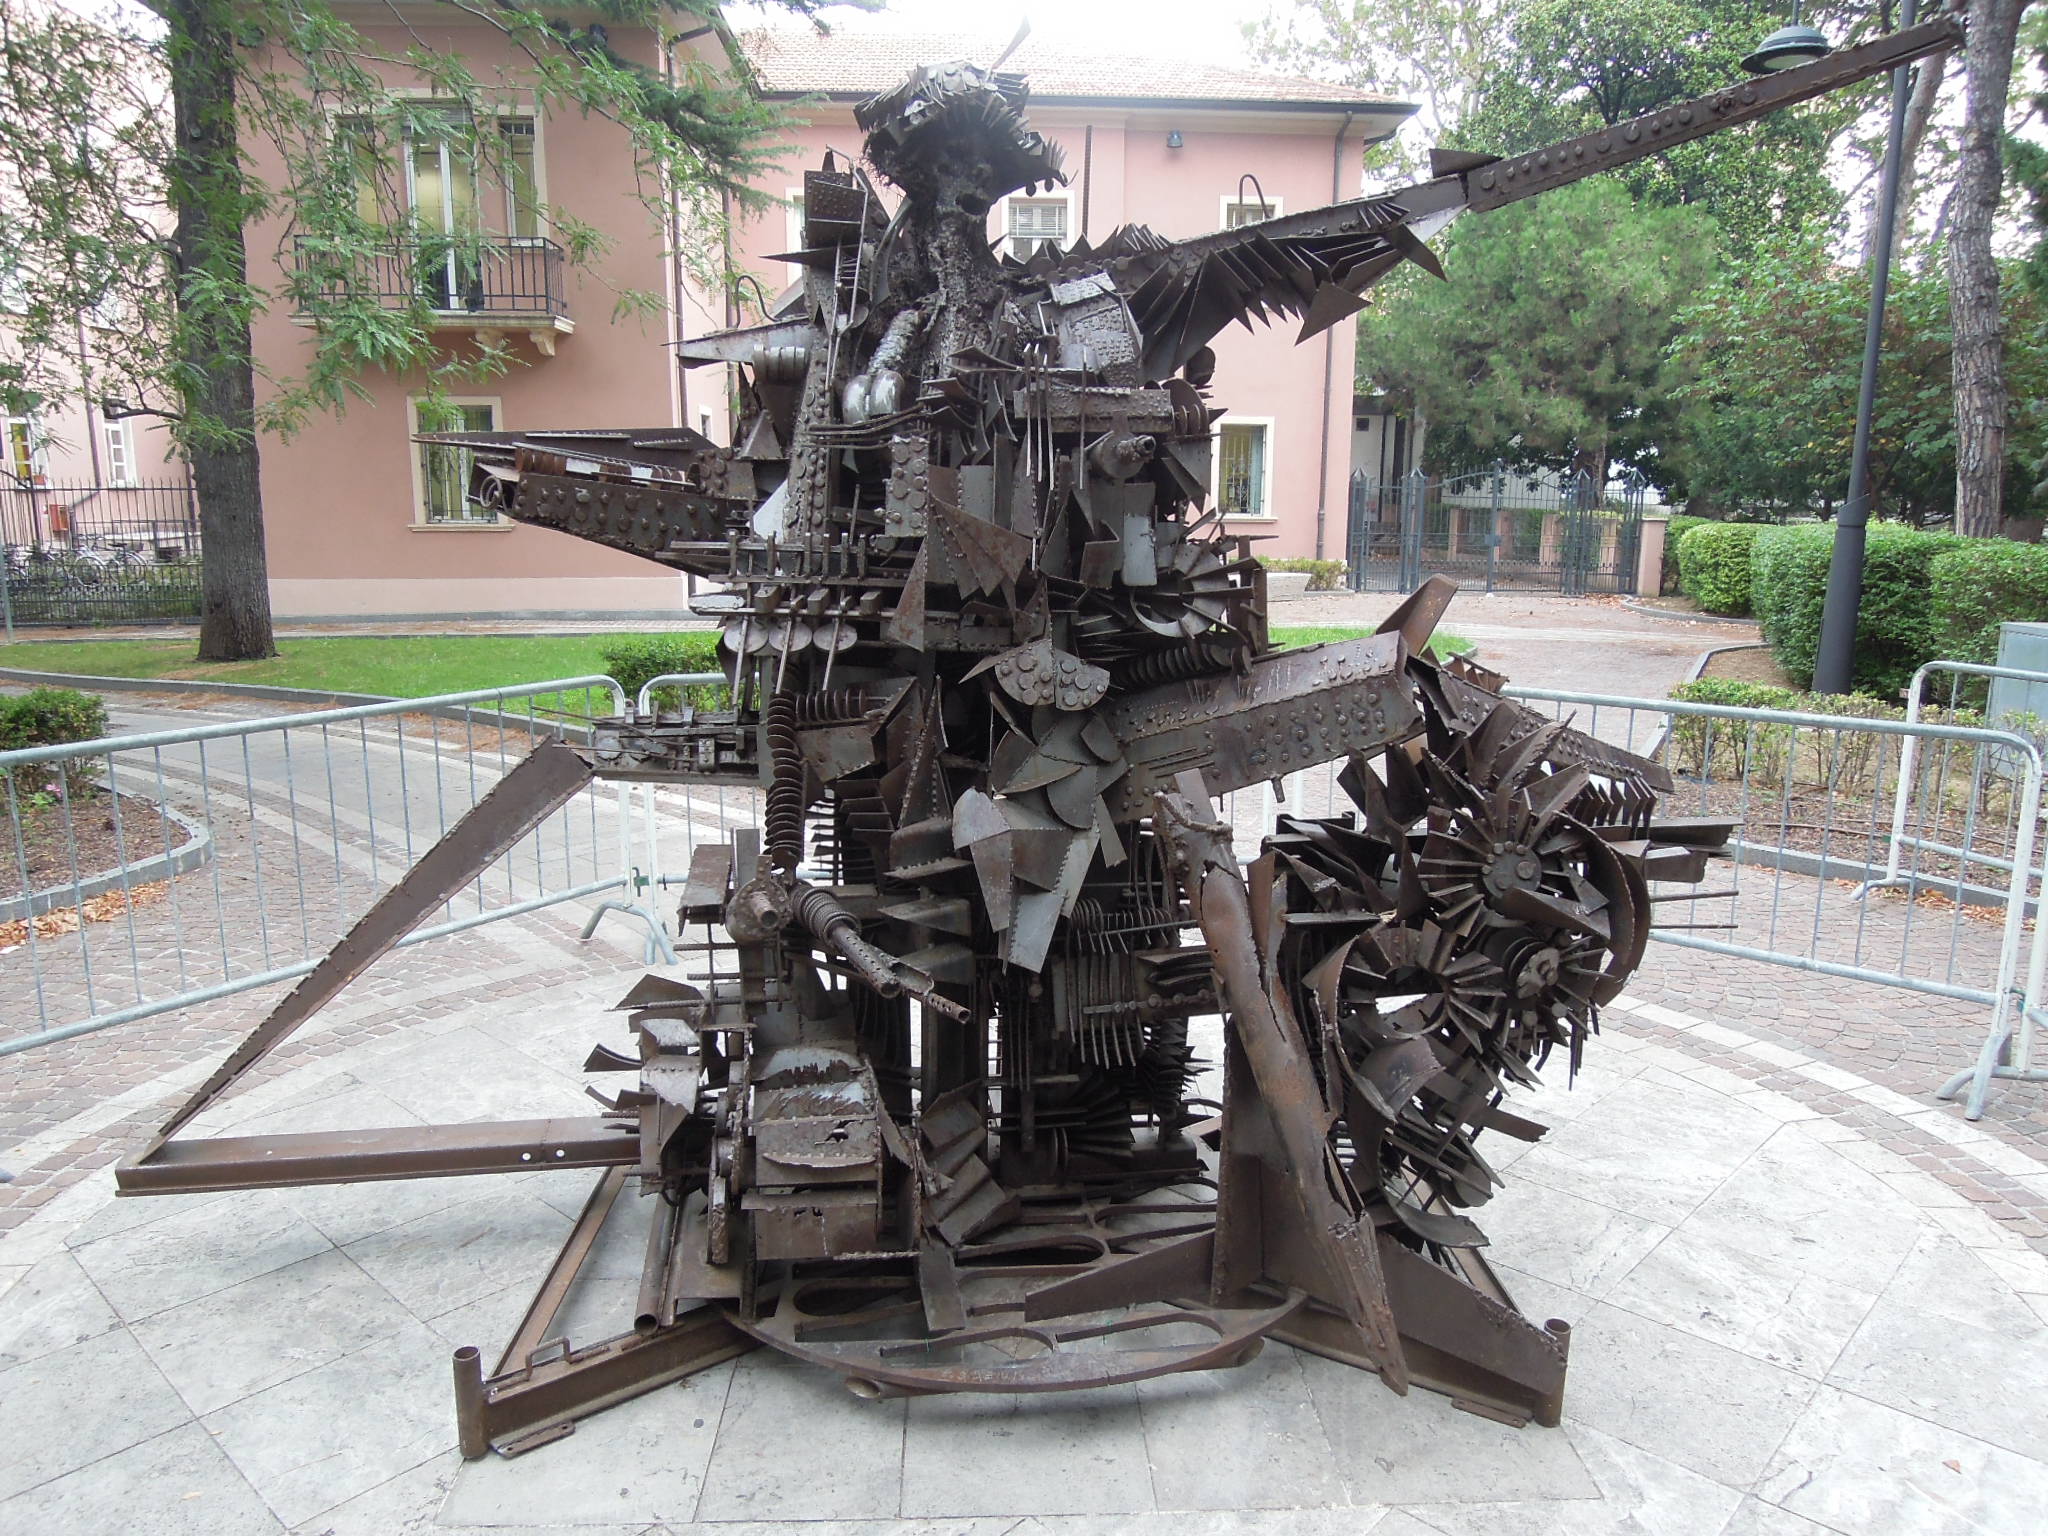 Marche. Esposta nel giardino del Municipio di Riccione la scultura “L’Uomo di Sarajevo” dell'artista marchigiano Giuseppe Gentili